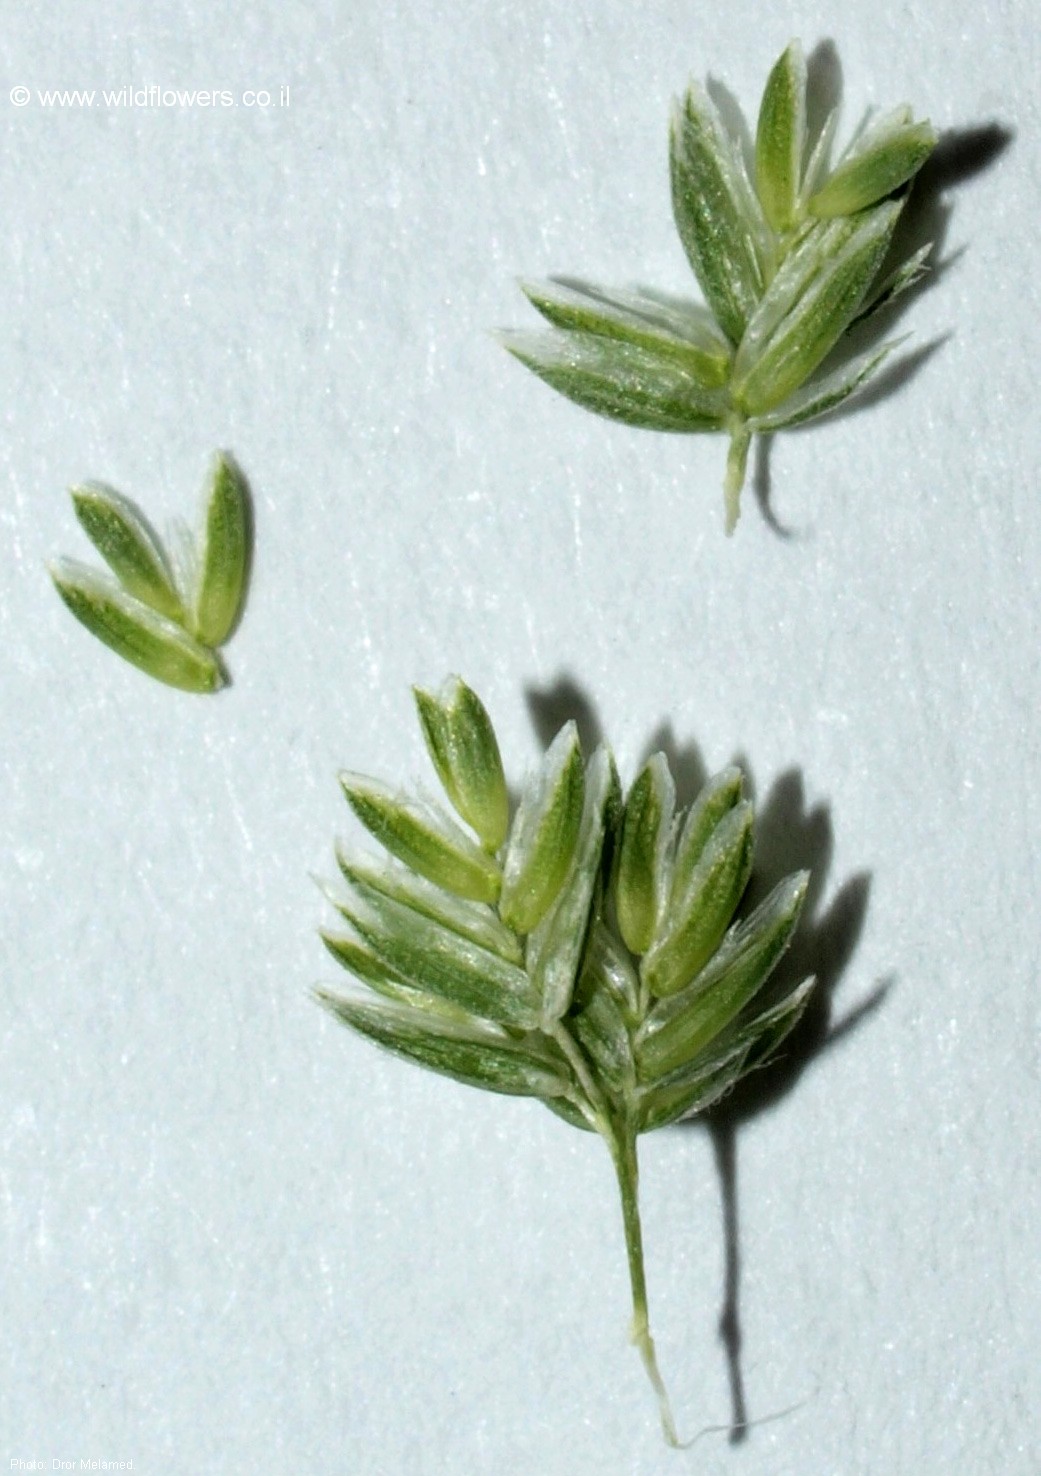 Rostraria obtusiflora